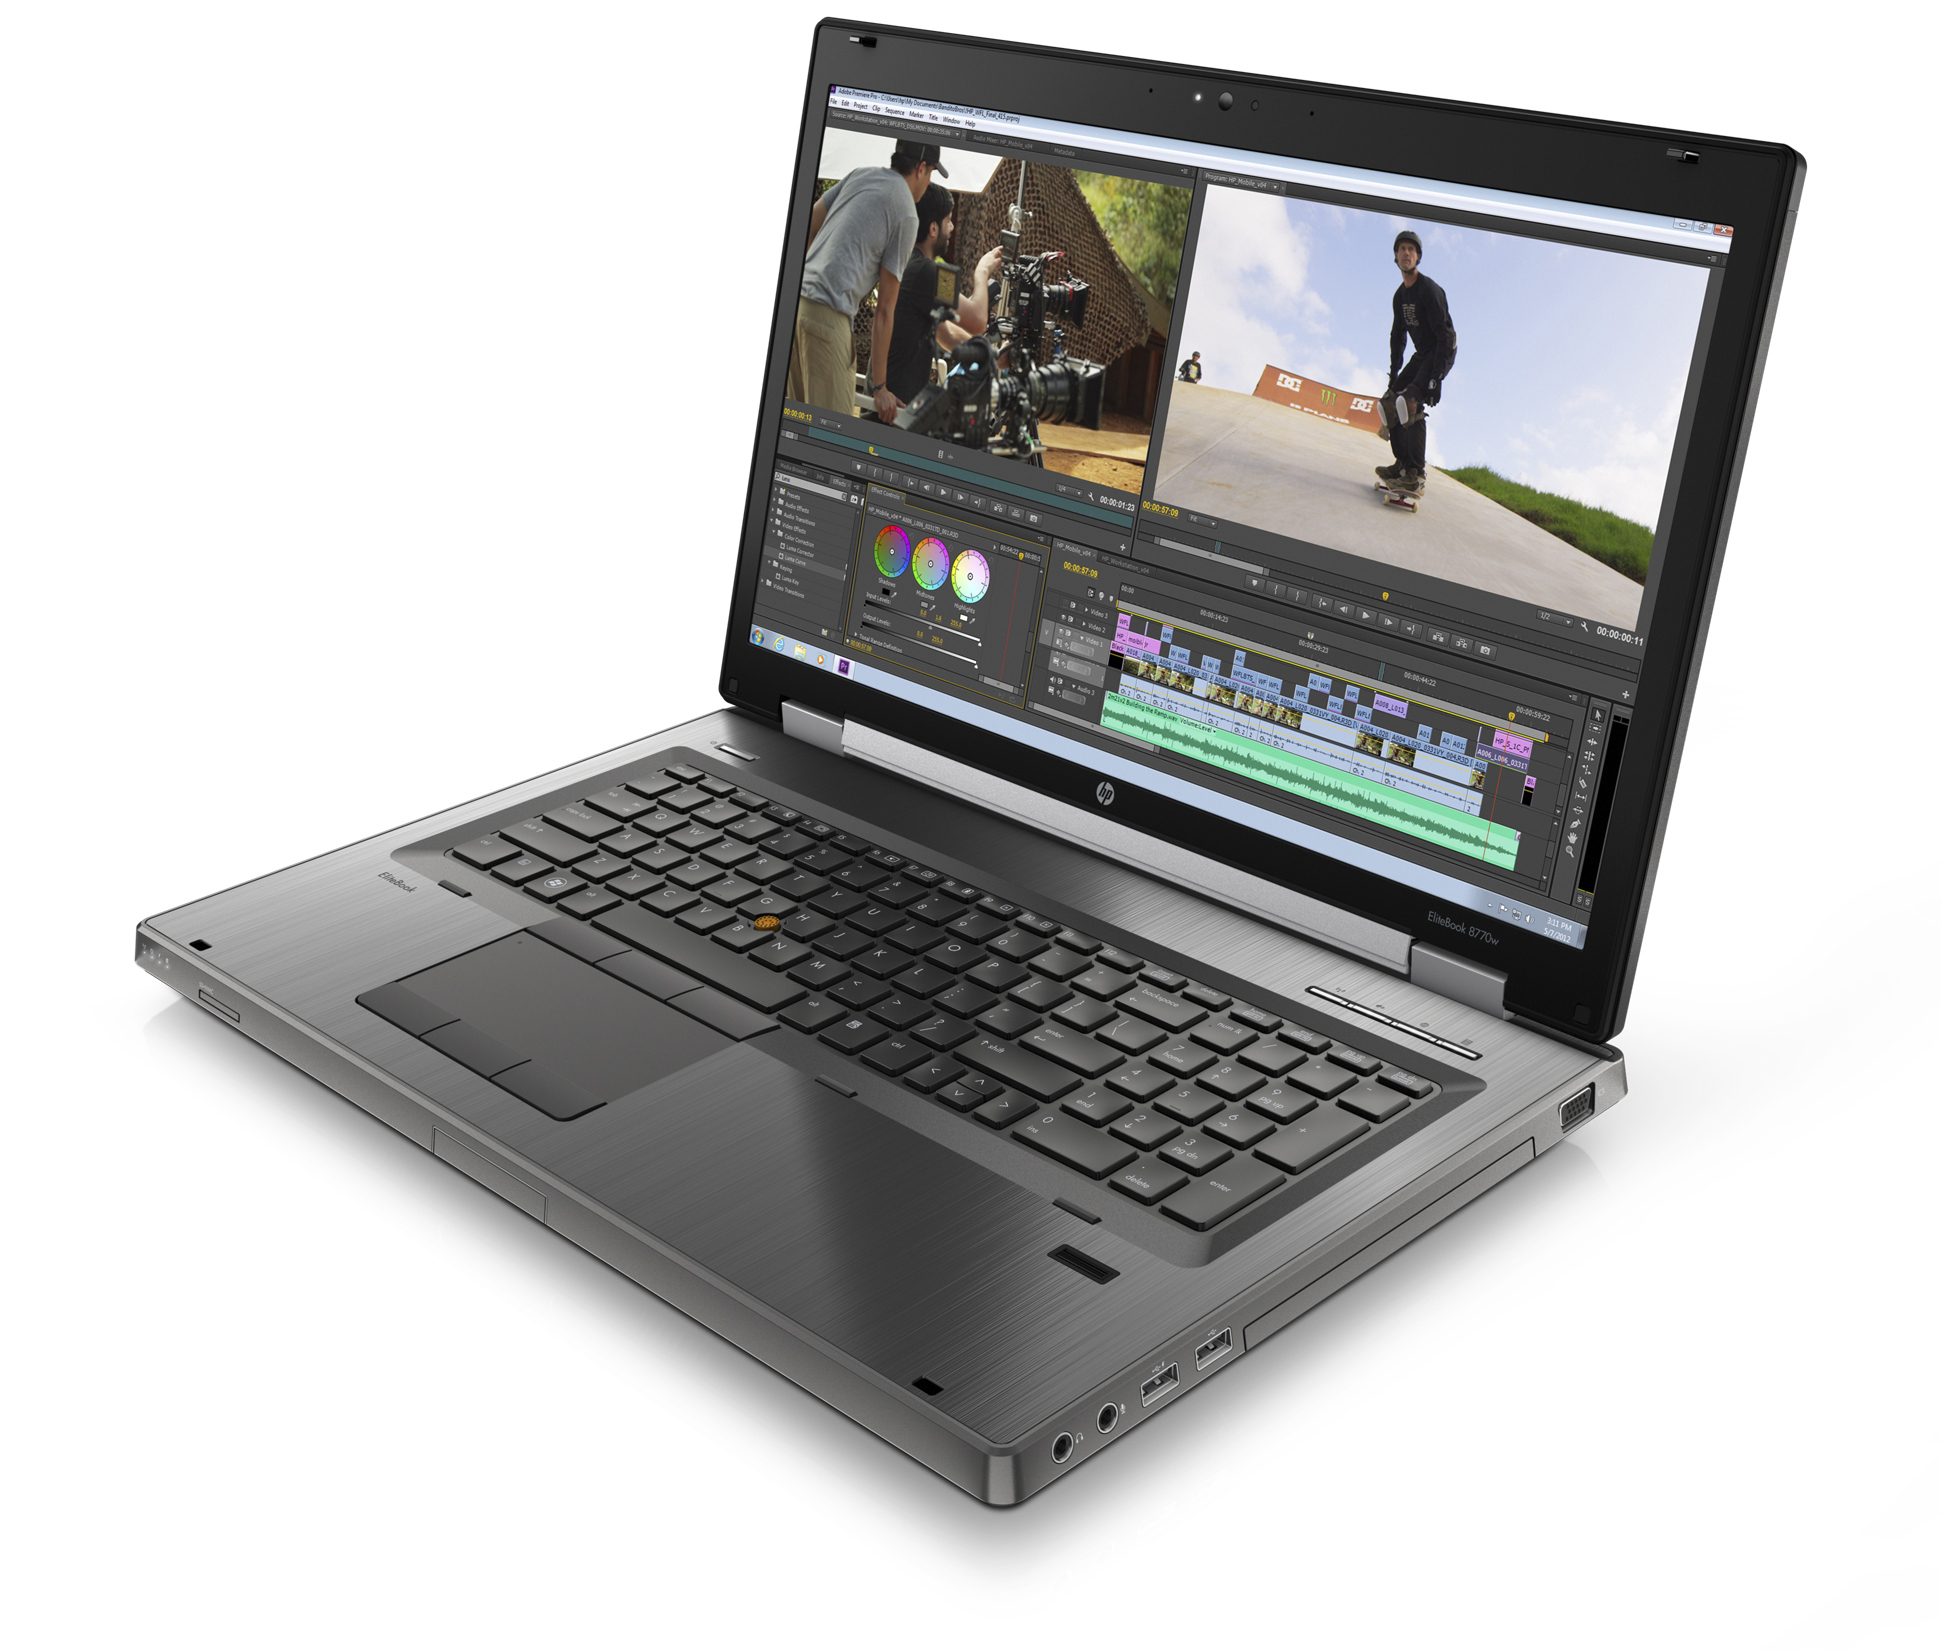 Laptop HP Elitebook 8770W (C6Y81UT) - Intel Core i7-3630QM 2.4GHz, 8GB RAM, 128GB SSD + 500GB HDD, ATI FirePro M4000, 17.3 inch